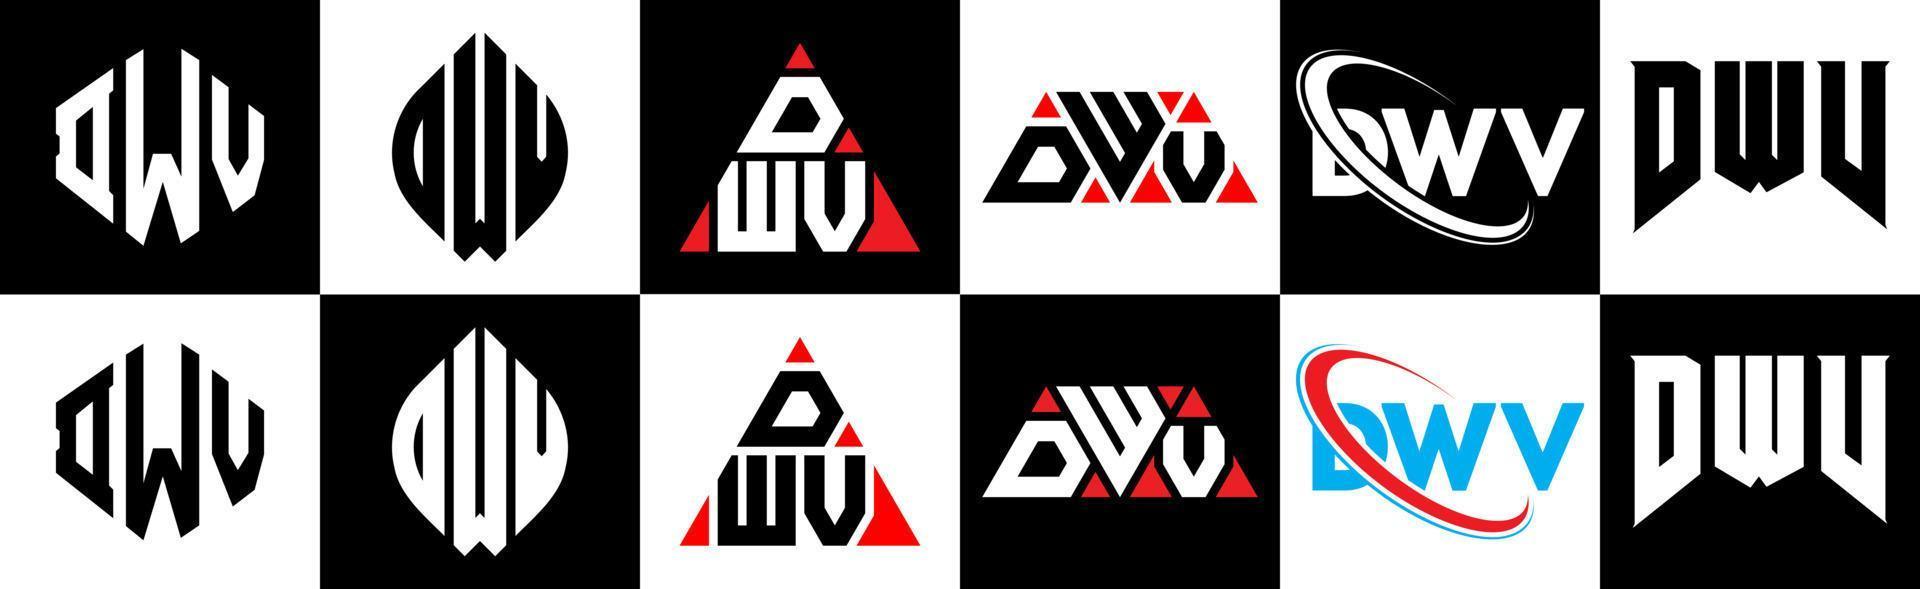 création de logo de lettre dwv en six styles. polygone dwv, cercle, triangle, hexagone, style plat et simple avec logo de lettre de variation de couleur noir et blanc dans un plan de travail. logo minimaliste et classique dwv vecteur